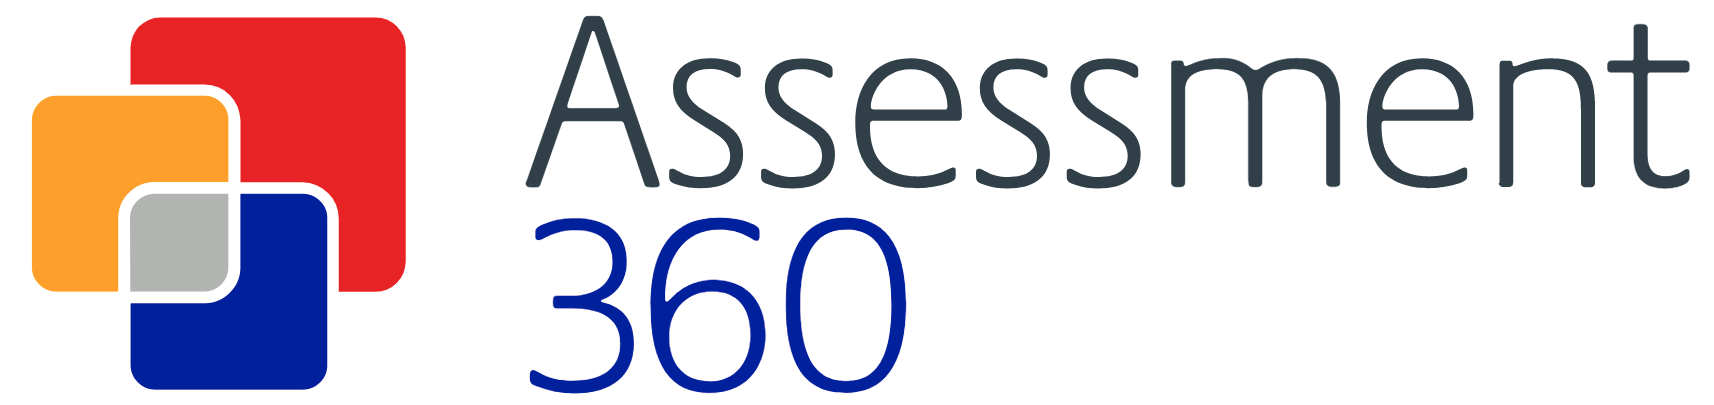 Assessment360